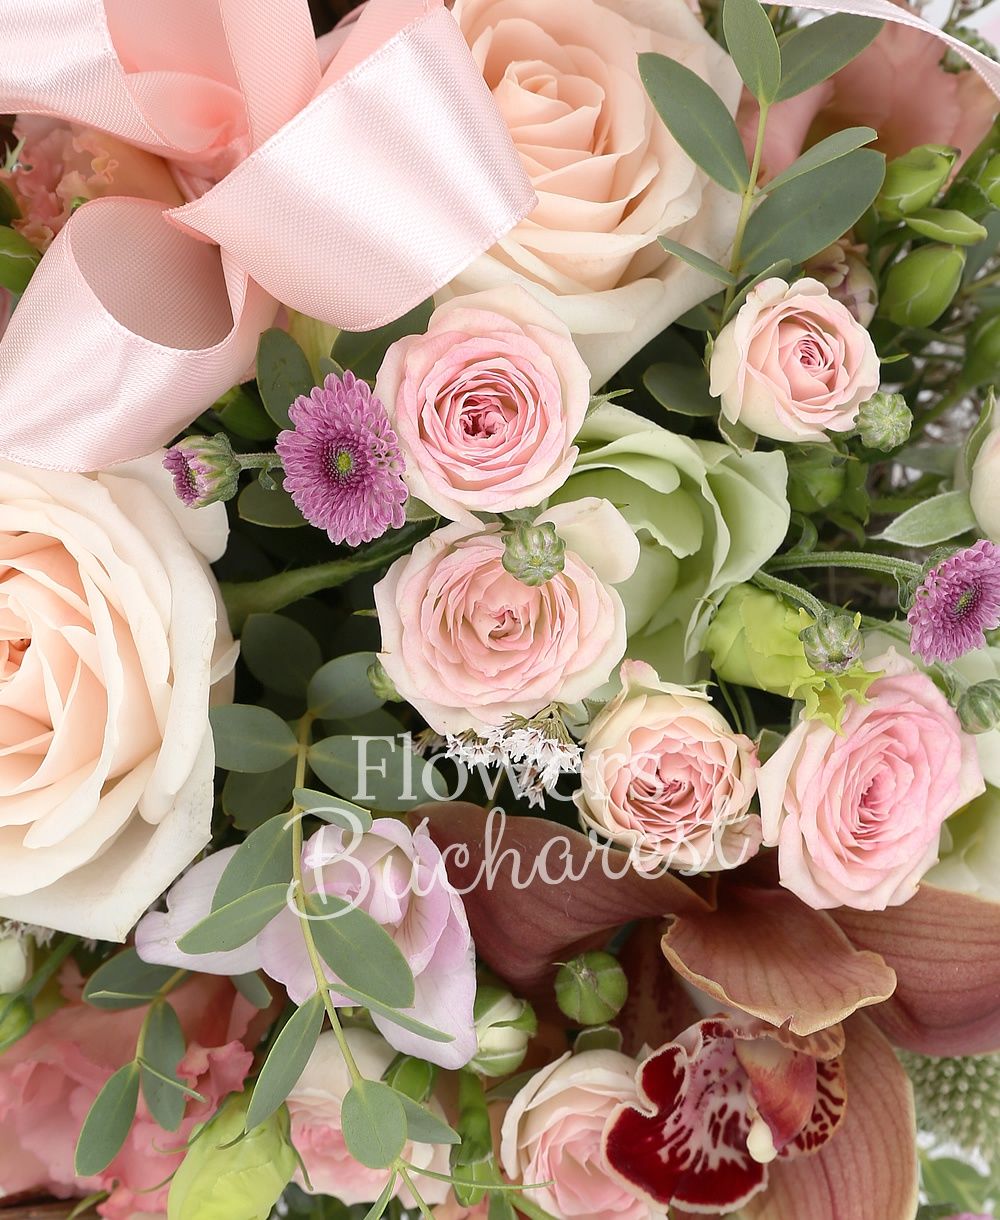 3 pink roses, 3 santini, 5 pink miniroses, 3 pink lisianthus, 3 green lisianthus, 2 white santini, 3 pink santini, greenery